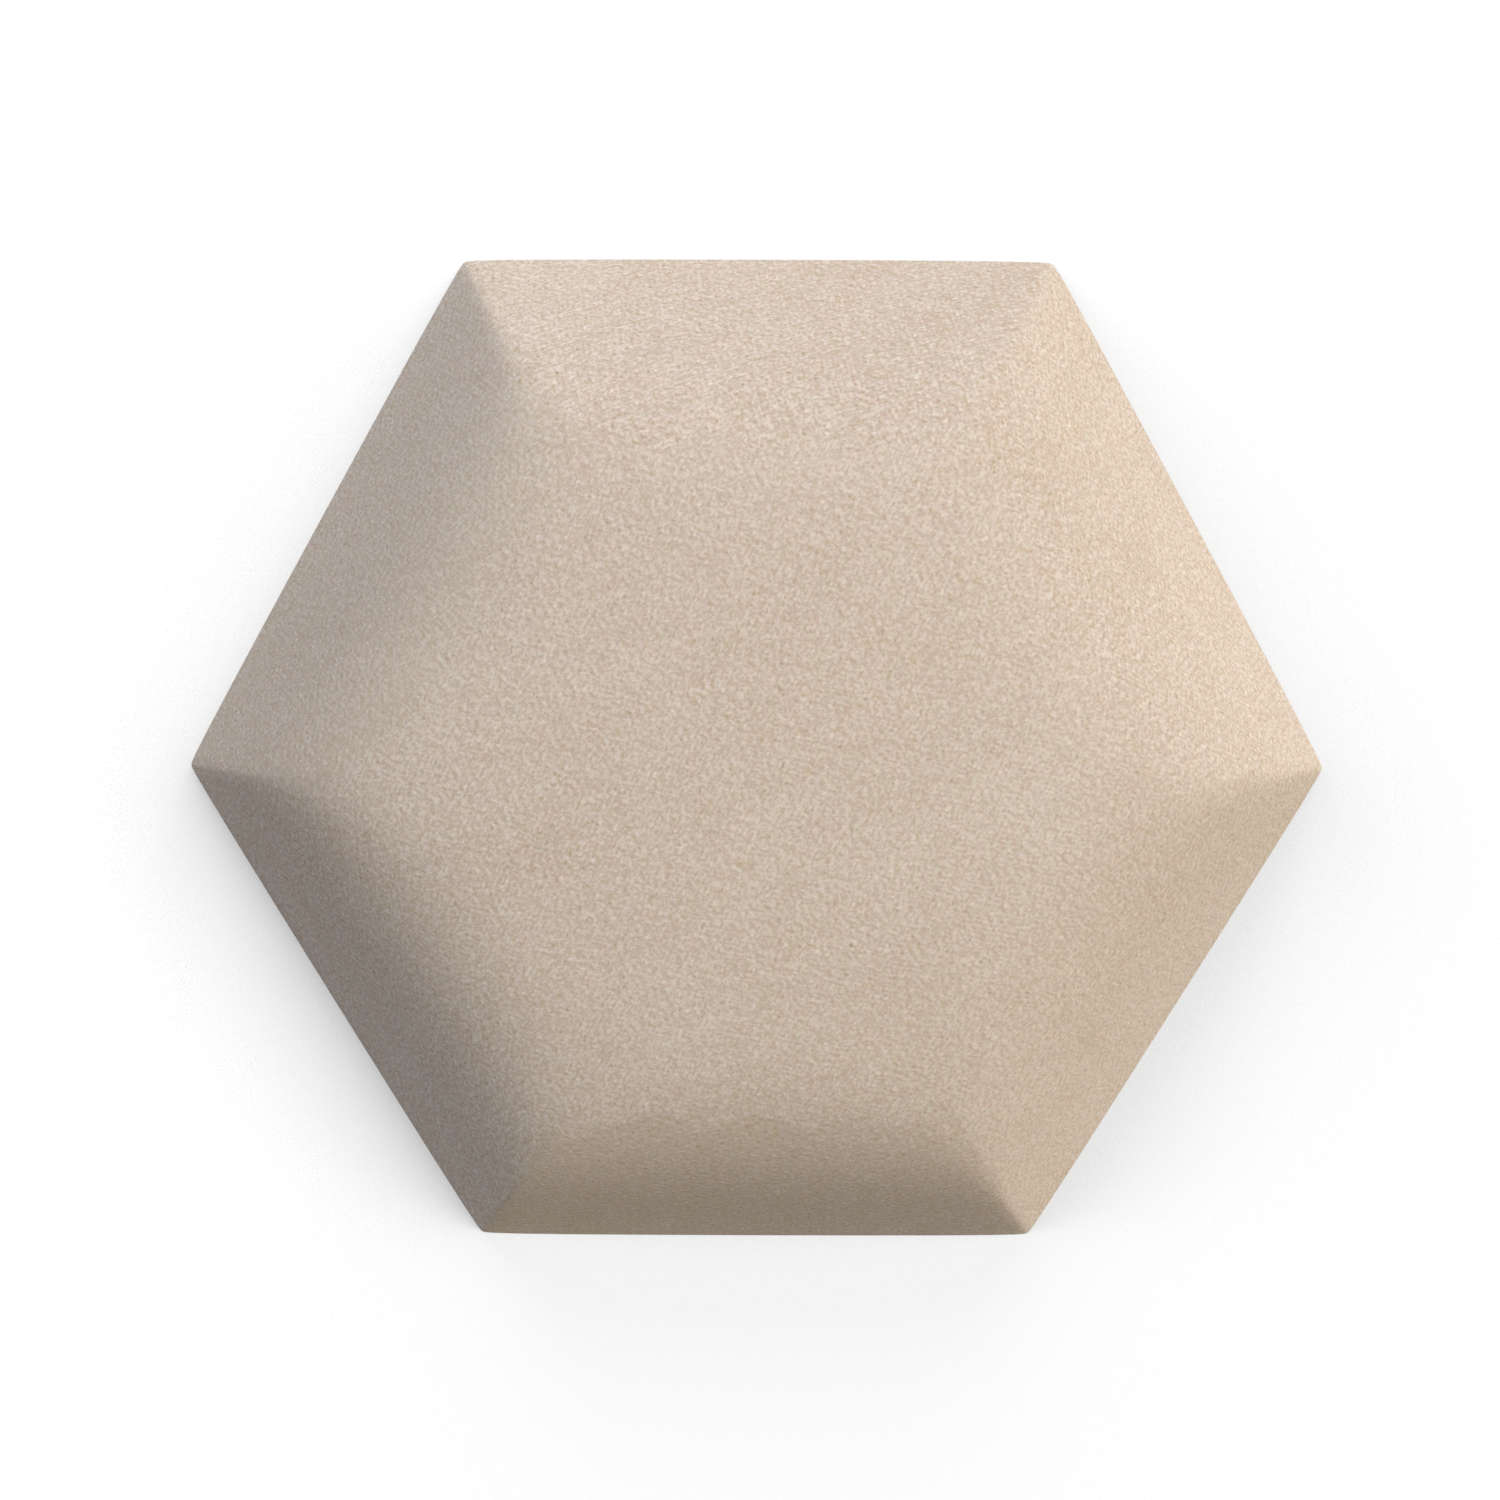 Polsterpaneel Hexagon - Milan Samtstoff